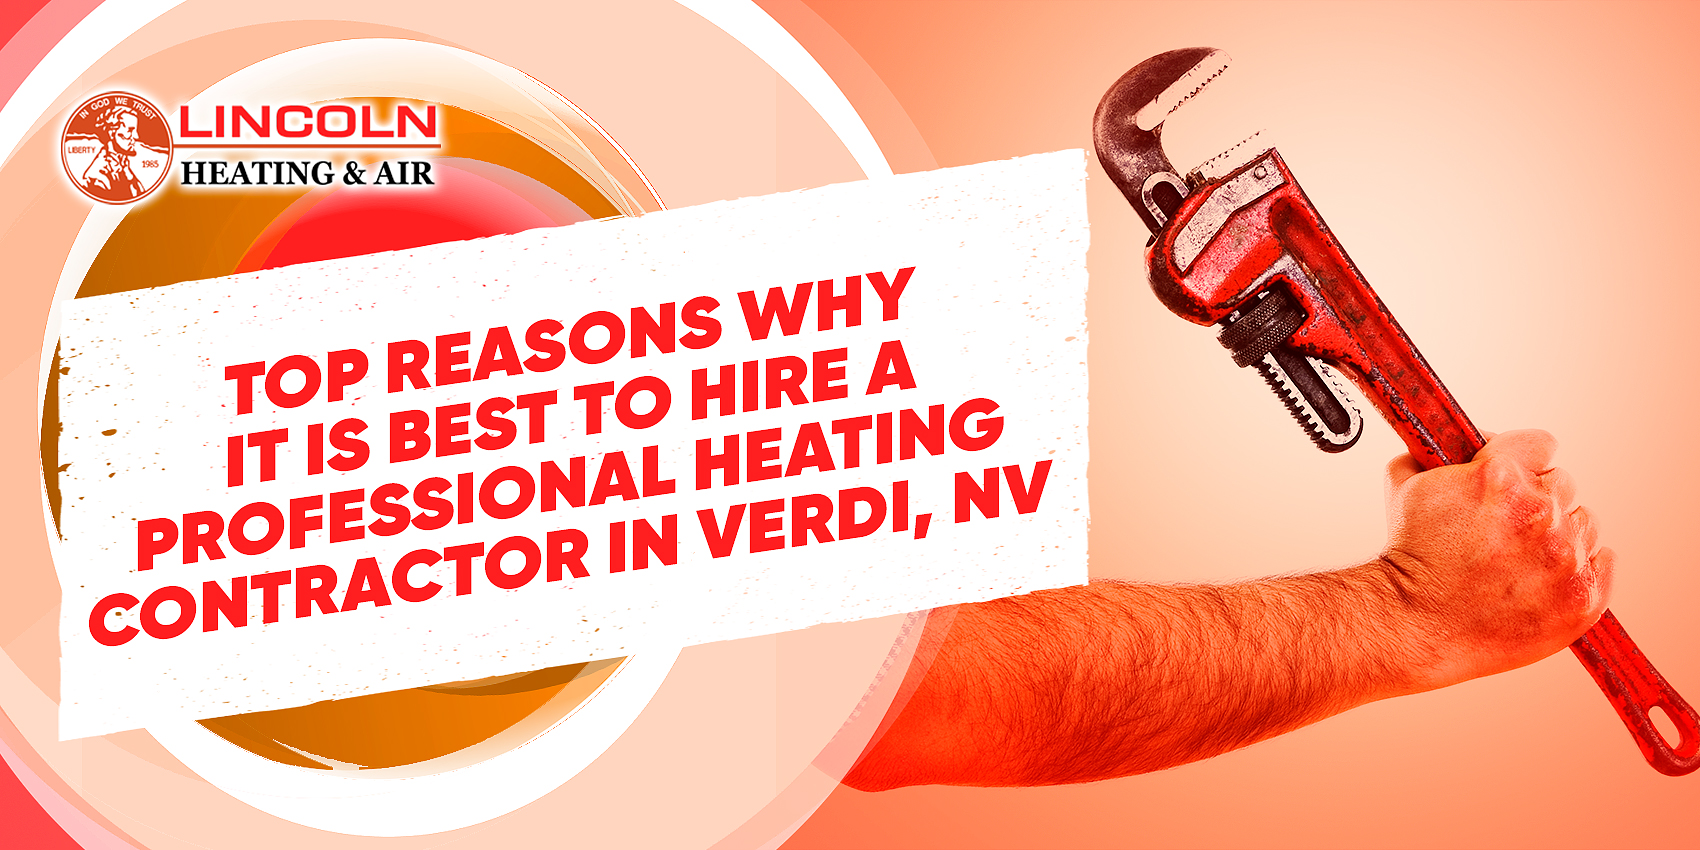 Professional heating repairs in Verdi, NV